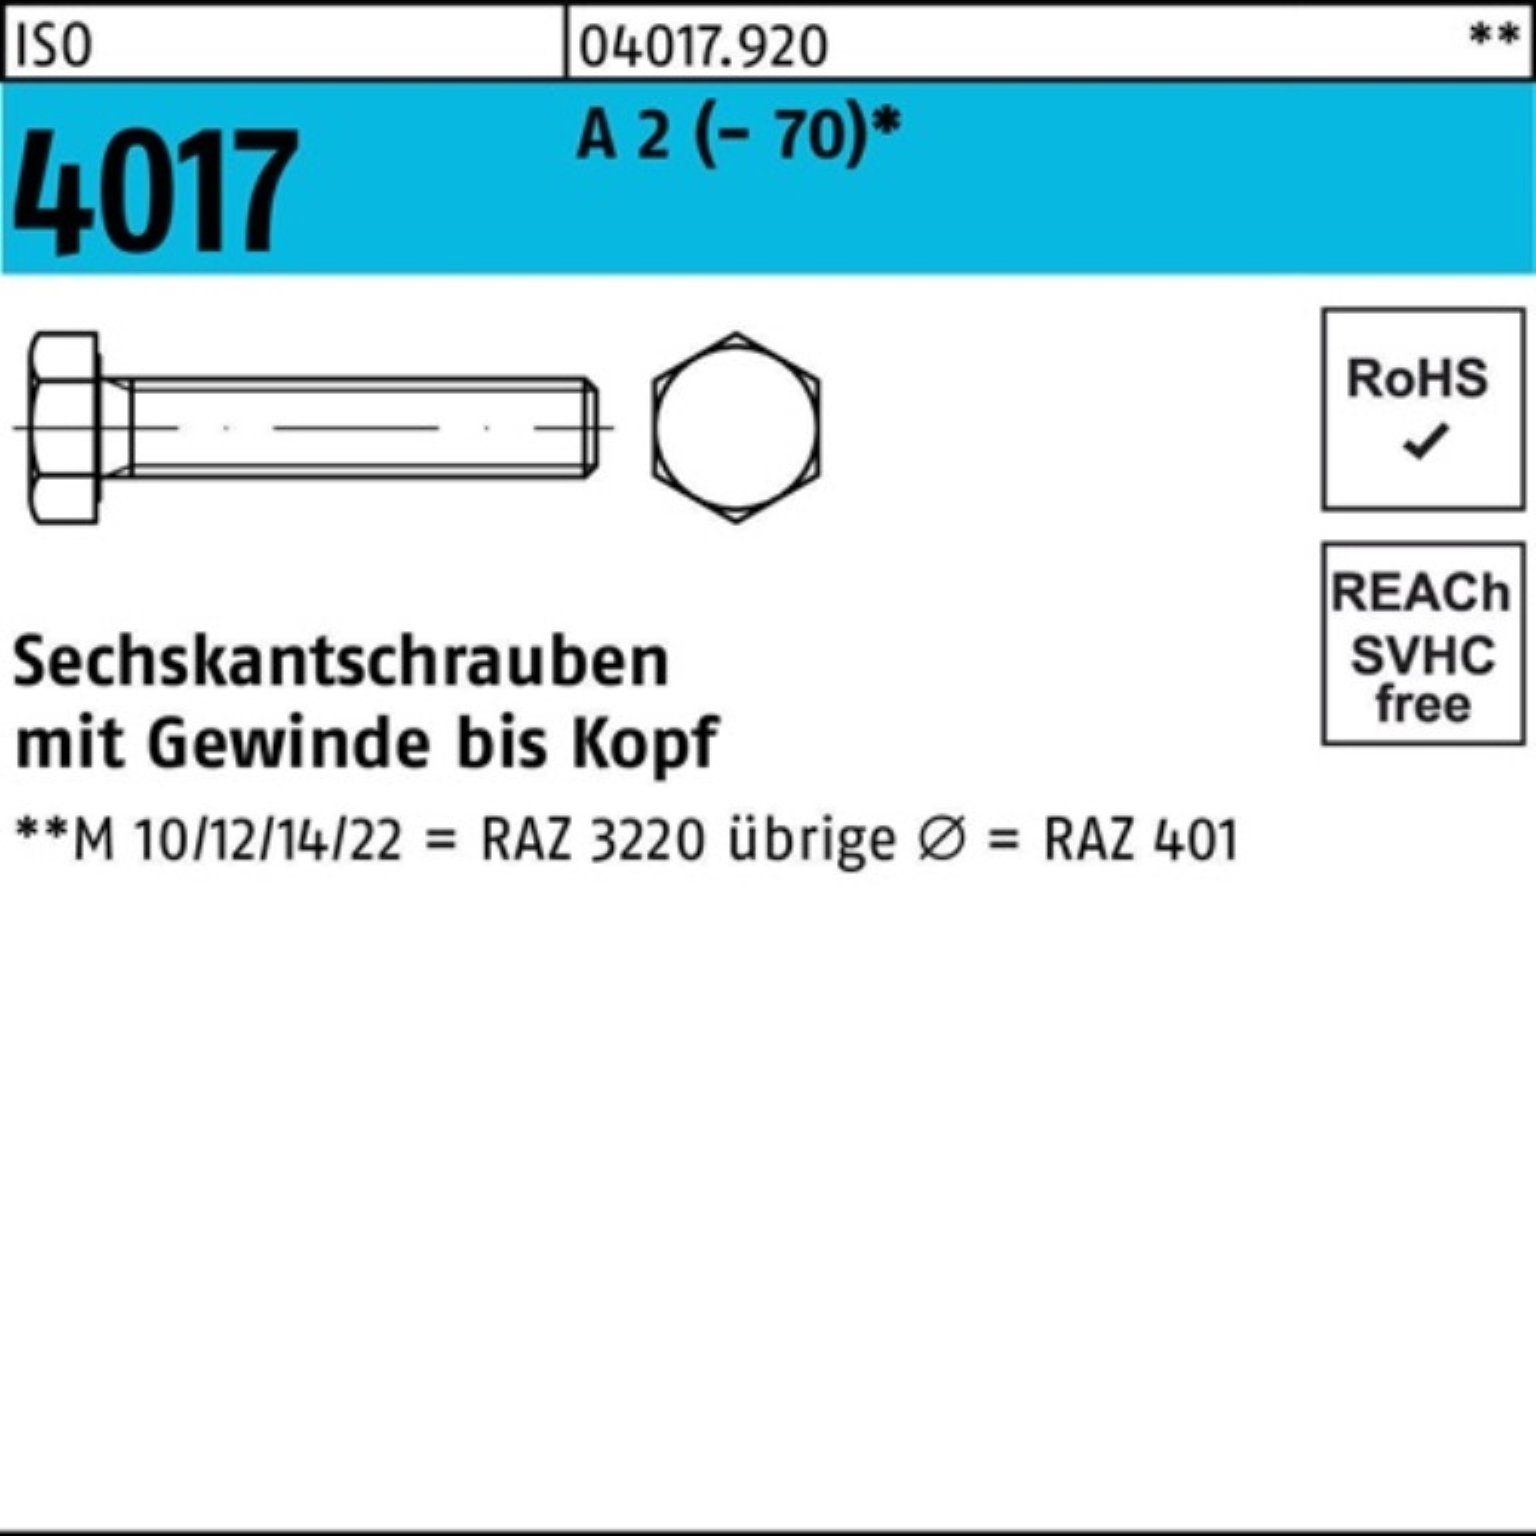 Bufab Sechskantschraube 100er Pack Sechskantschraube ISO 4017 VG M27x 65 A 2 (70) 1 Stück I